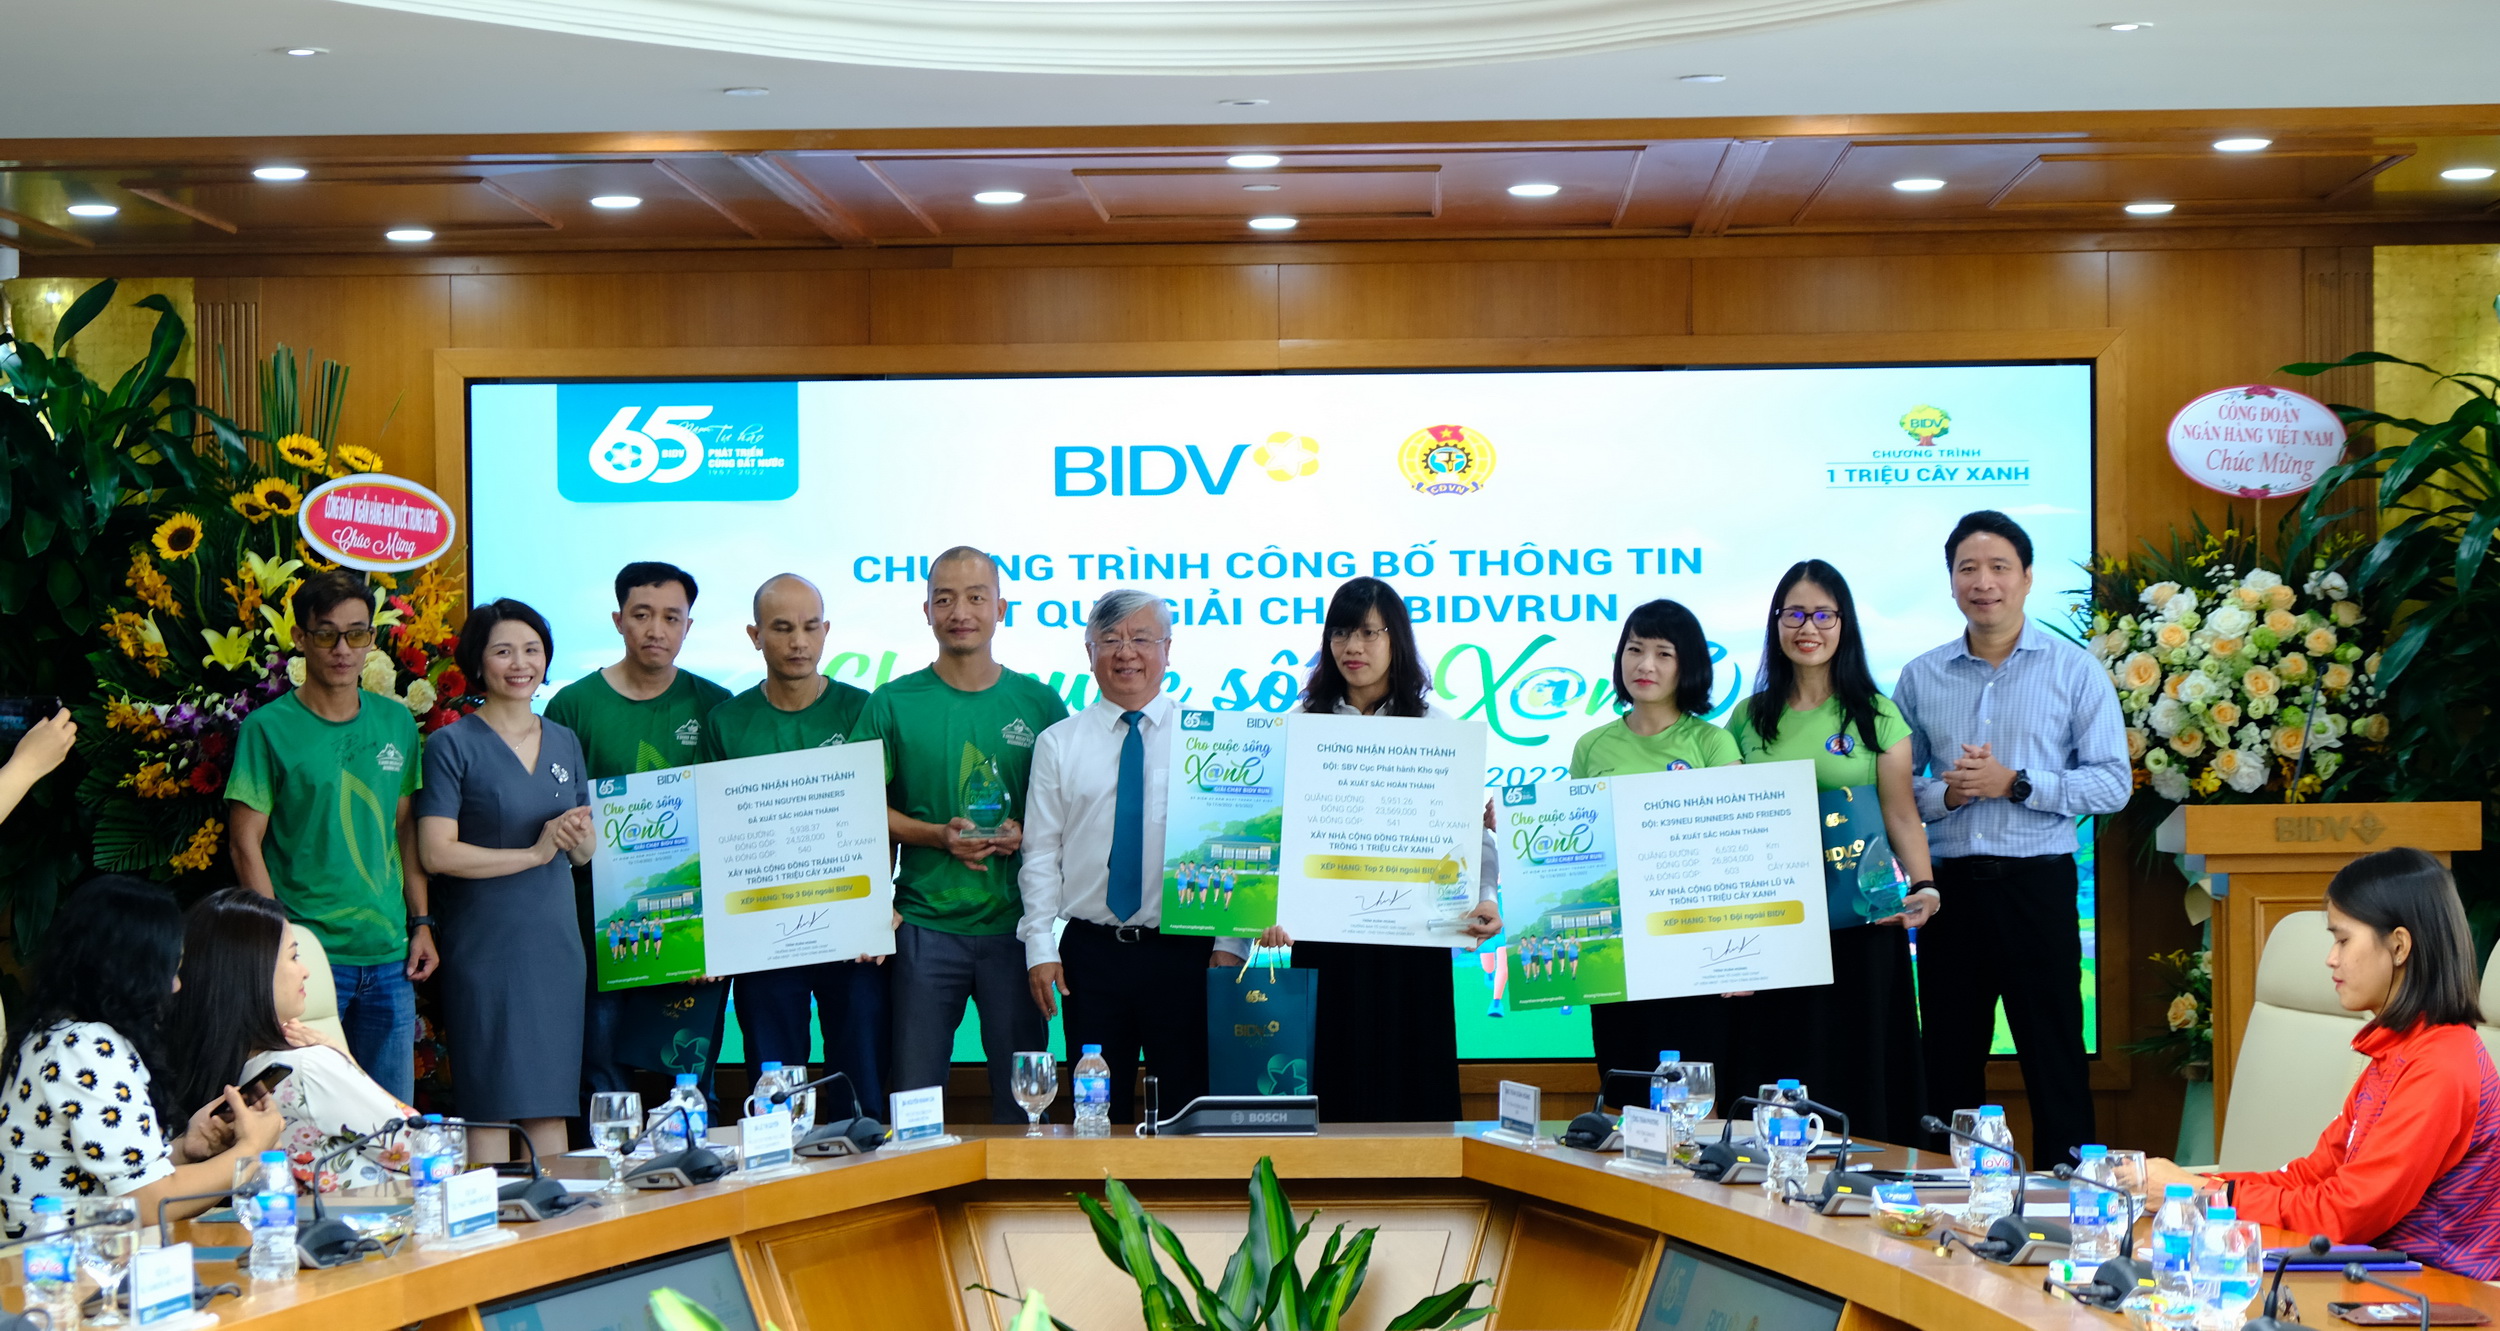 Đại diện lãnh đạo BIDV trao thưởng cho các đội đạt thành tích cao trong Giải chạy BIDVRUN.